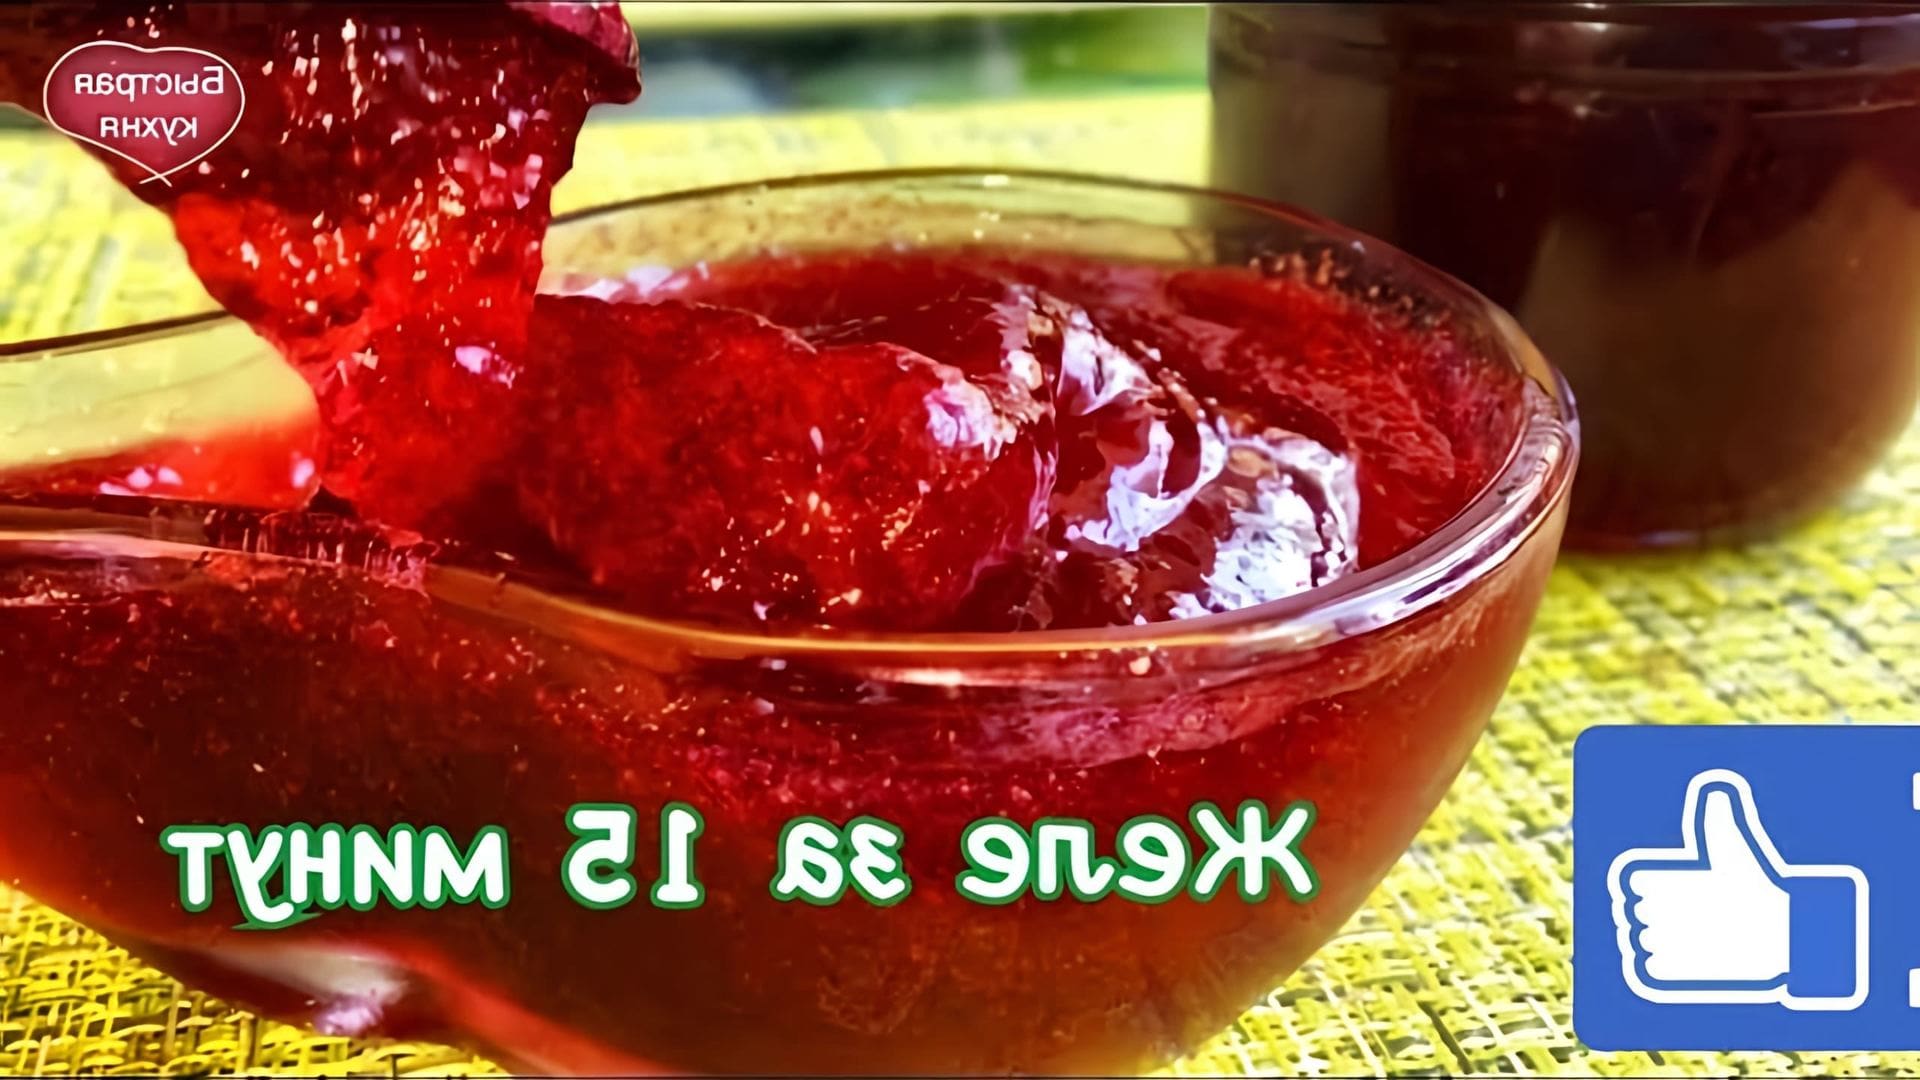 В этом видео демонстрируется рецепт приготовления желе из красной смородины